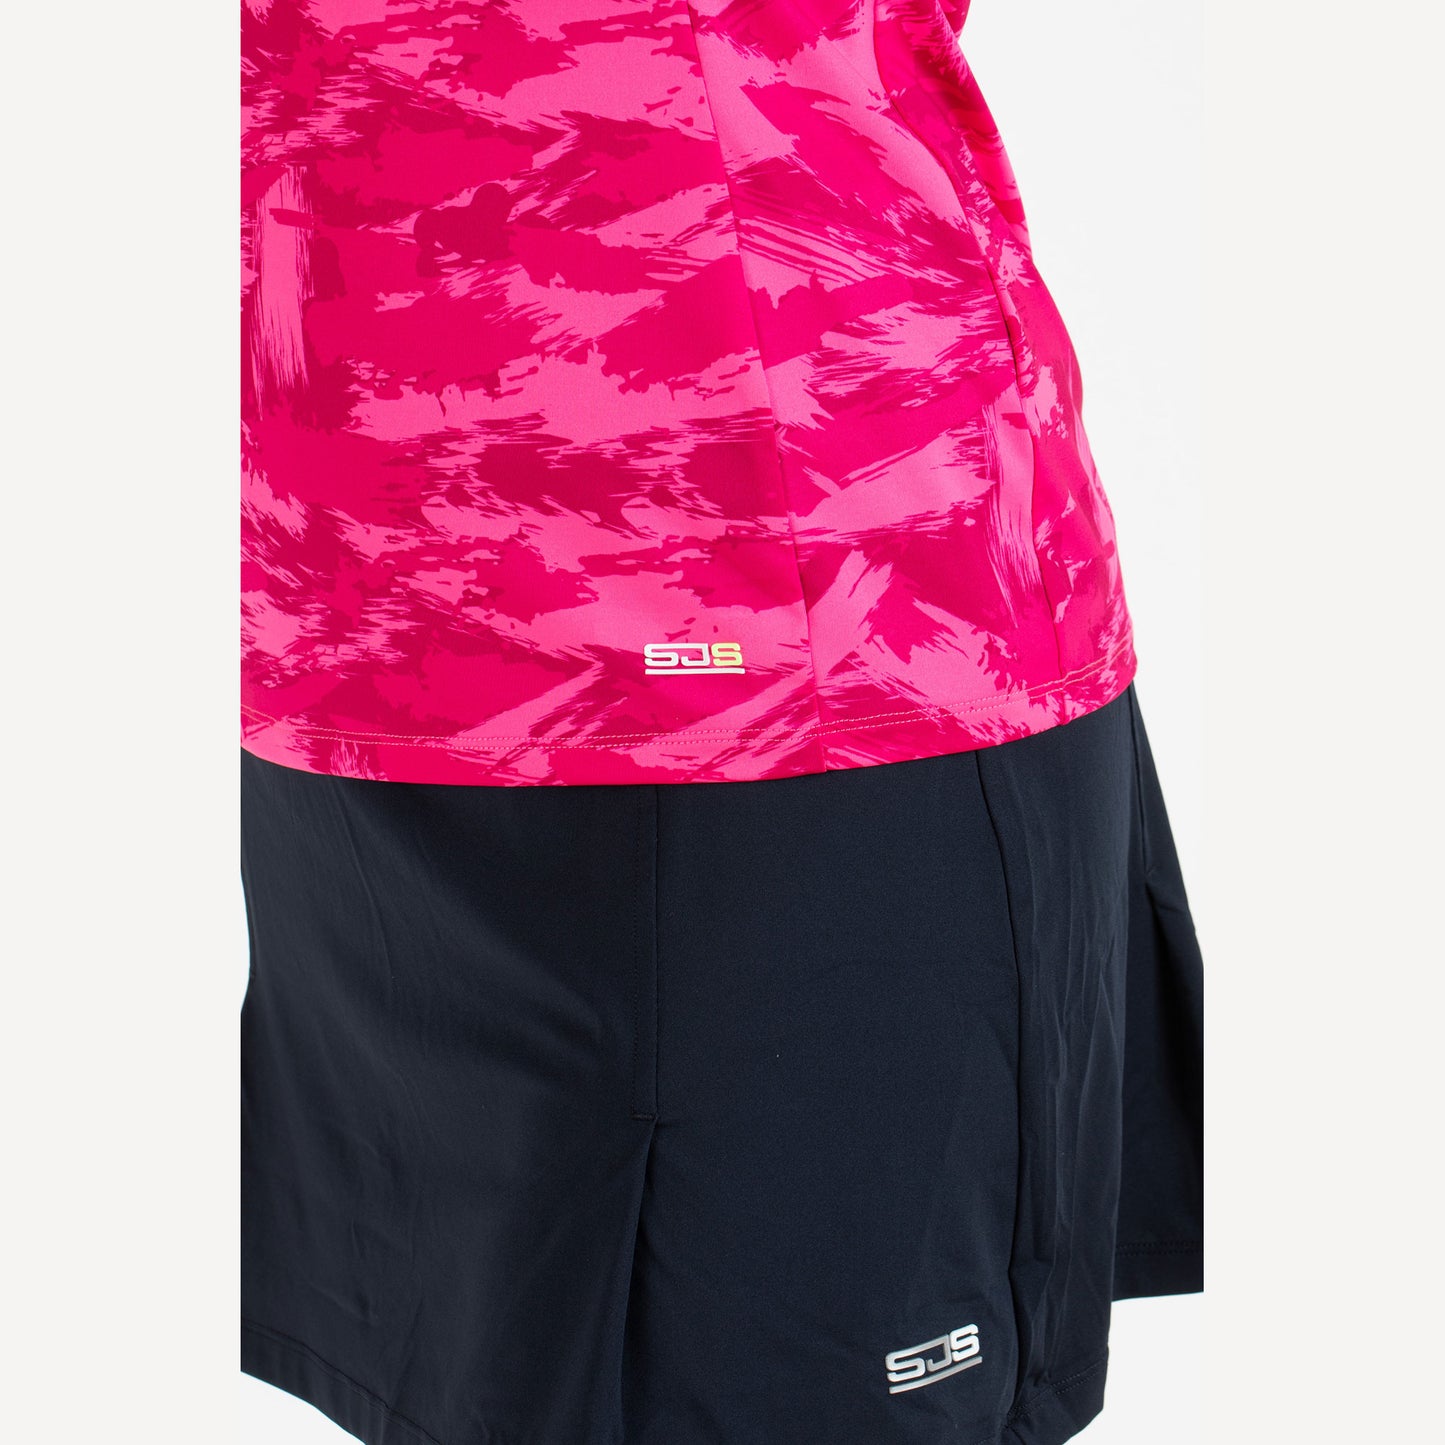 Sjeng Sports Destina Women's Tennis Shirt Pink (4)